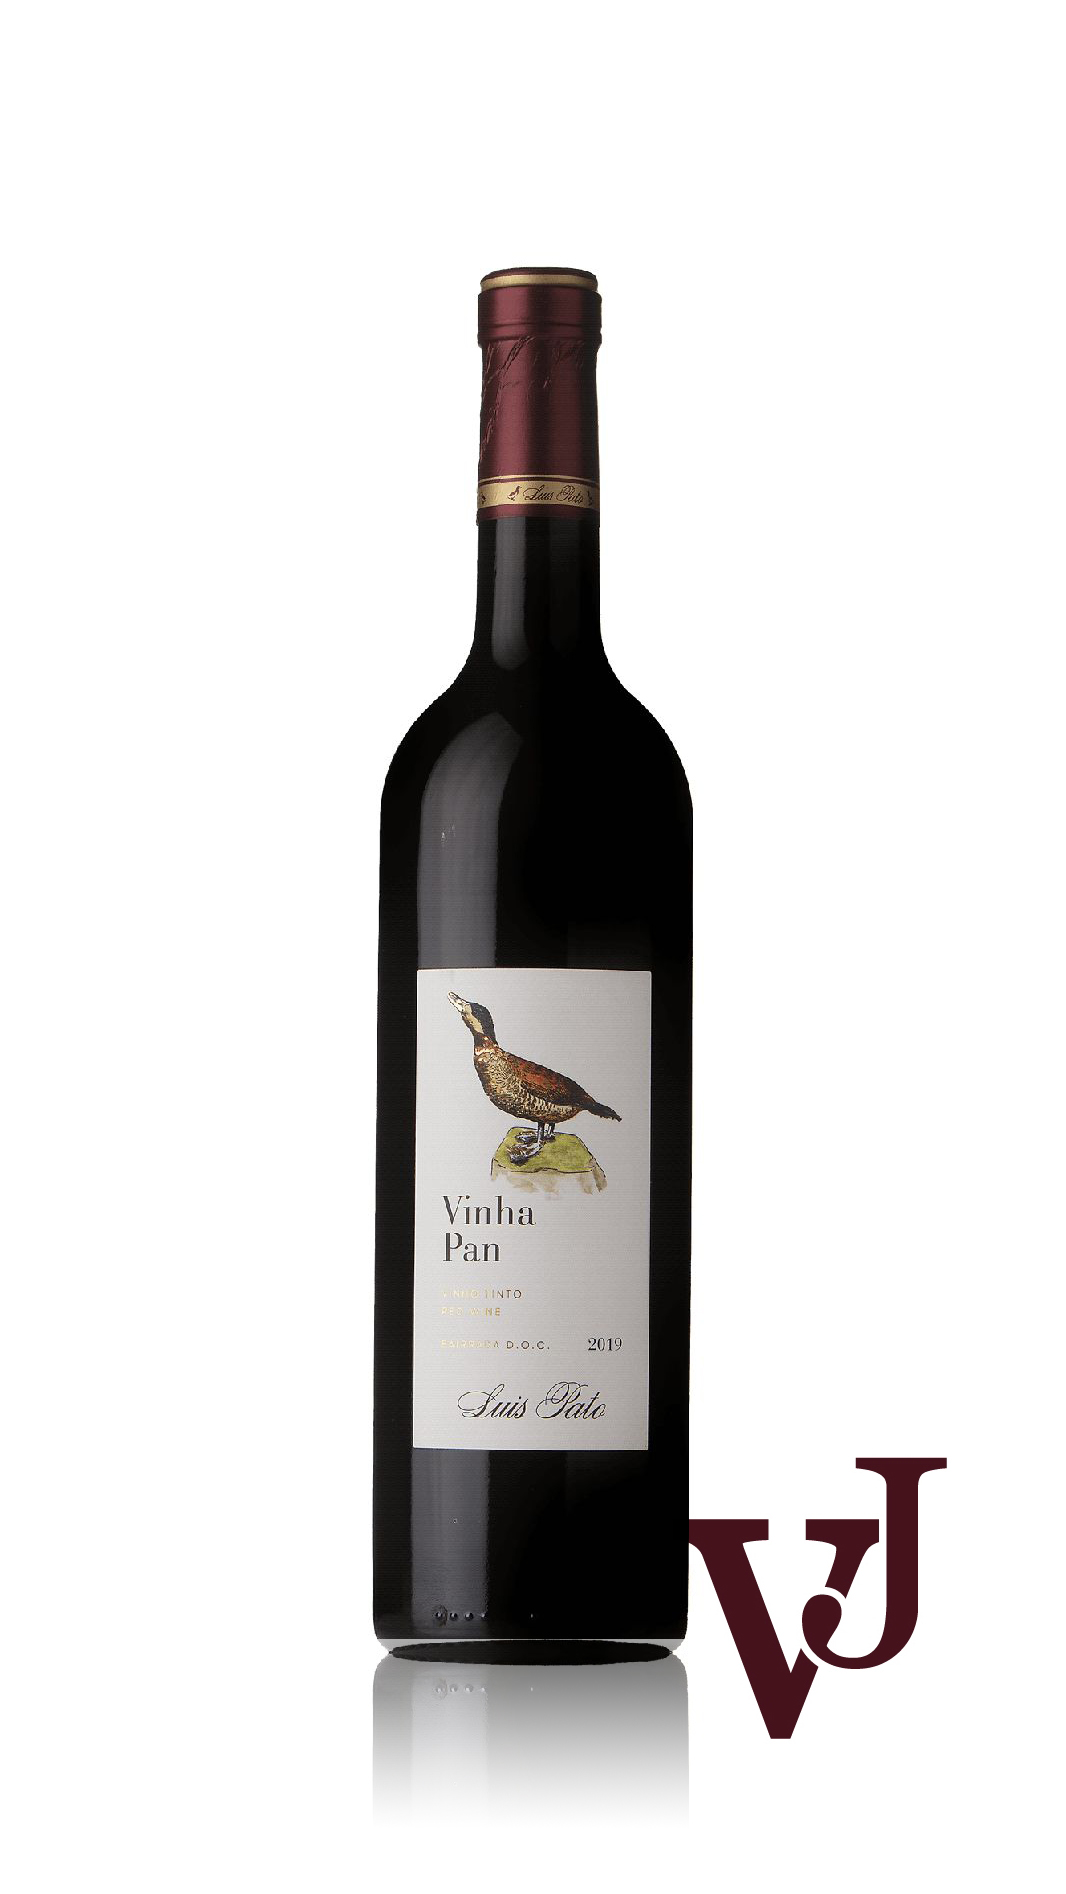 Rött Vin - Vinha Pan Luis Pato 2019 artikel nummer 9473001 från producenten Luis Pato från området Portugal